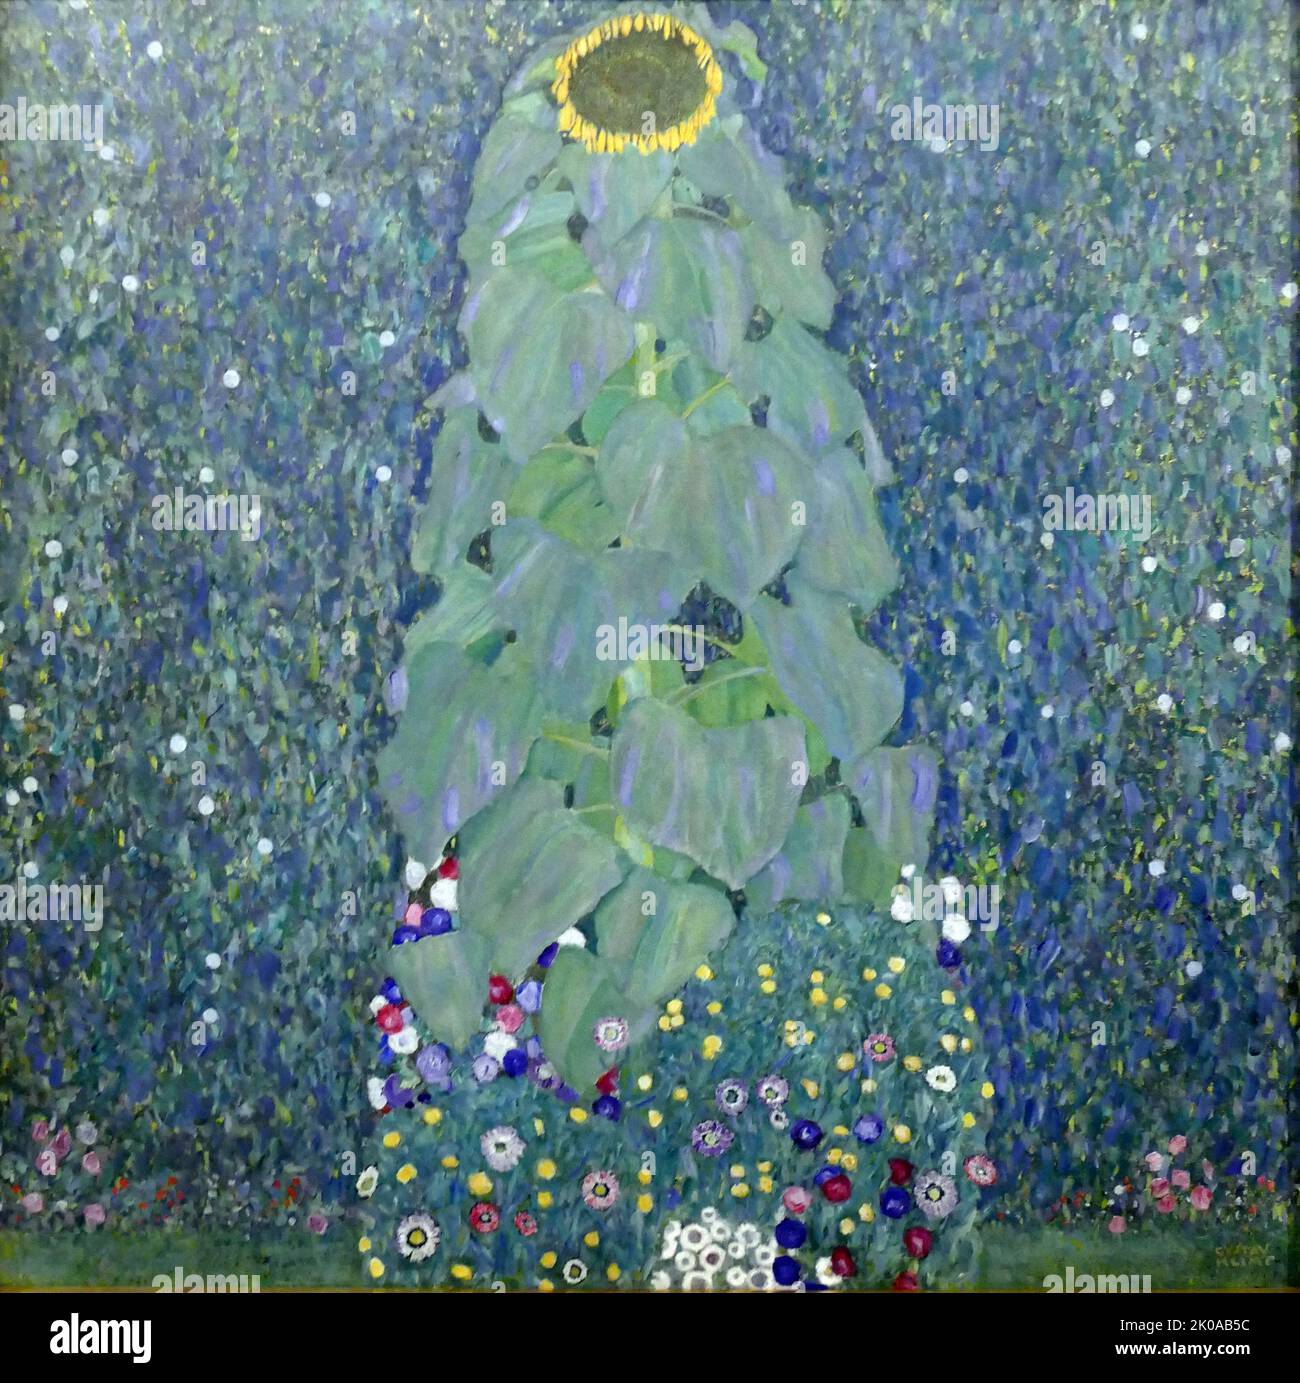 Tournesol, par Gustav Klimt, 1907/1908. Gustav Klimt (14 juillet 1862 - 6 février 1918) était un peintre symboliste autrichien et l'un des membres les plus éminents du mouvement de la sécession de Vienne. Klimt est réputé pour ses peintures, peintures murales, croquis et autres objets d'art Banque D'Images